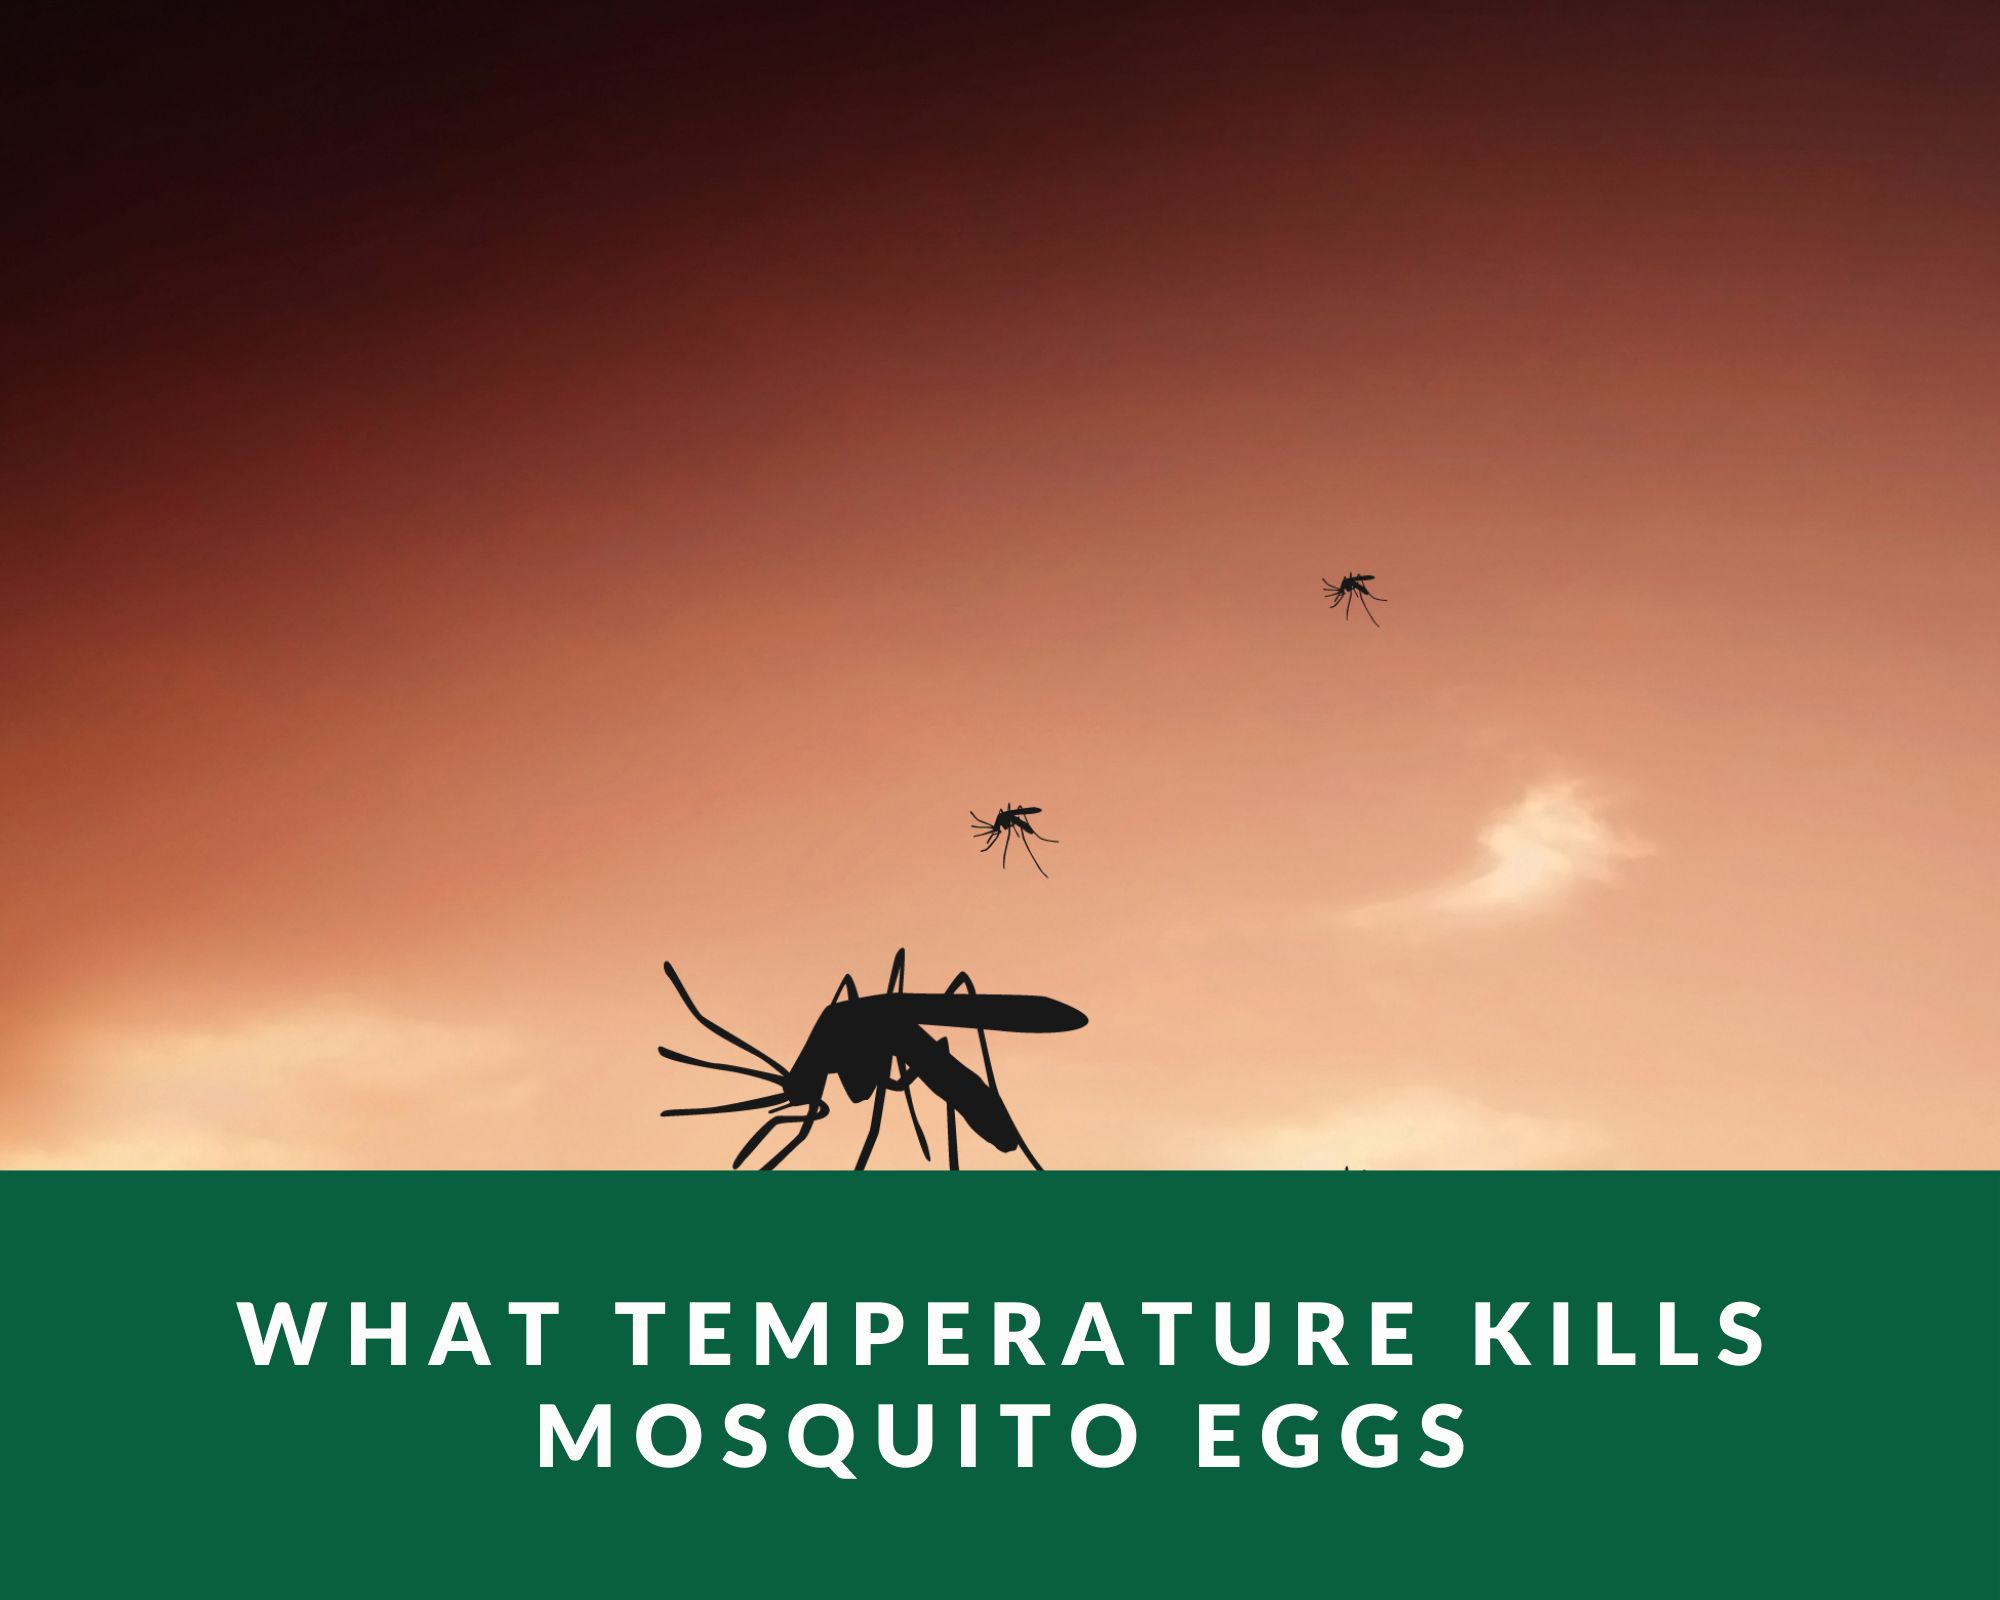 What temperature kills mosquito eggs